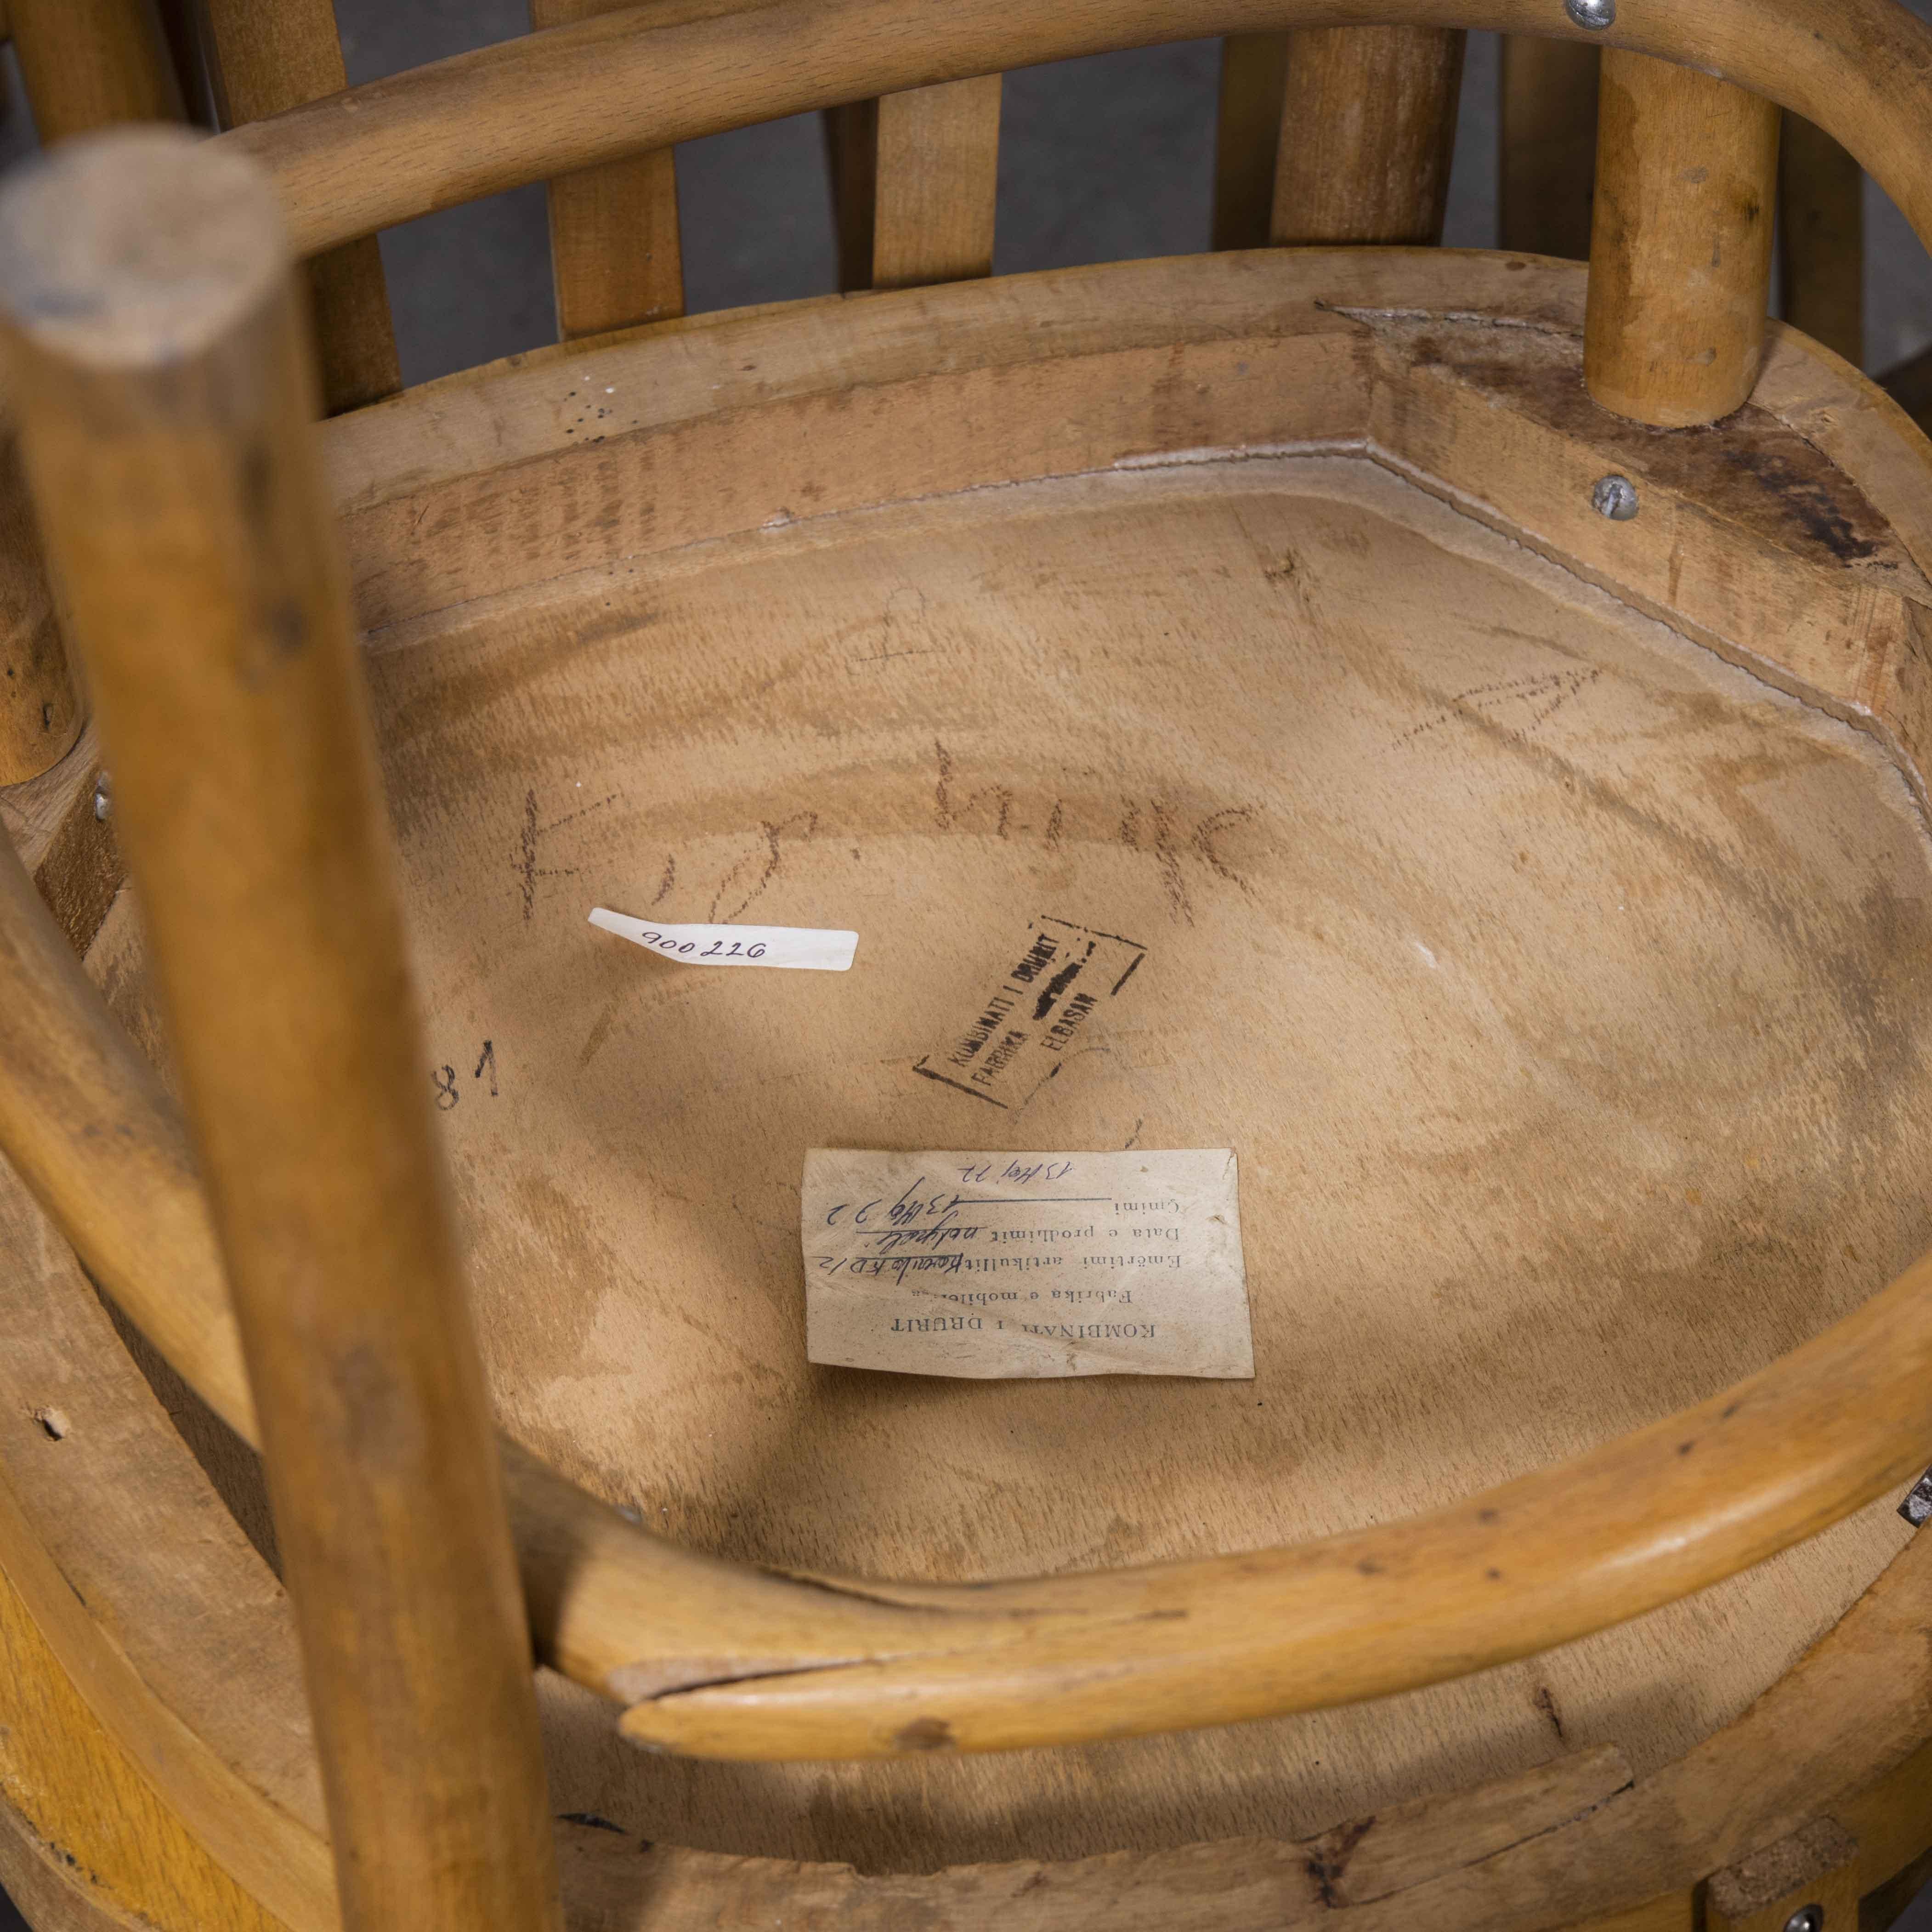 chaise bistro en bois courbé Baumann des années 1970 - siège rond - ensemble de huit pièces

chaise bistro en bois courbé Baumann des années 1950 - siège rond - jeu de huit. Chaise bistro en hêtre d'un raffinement inhabituel, fabriquée en France